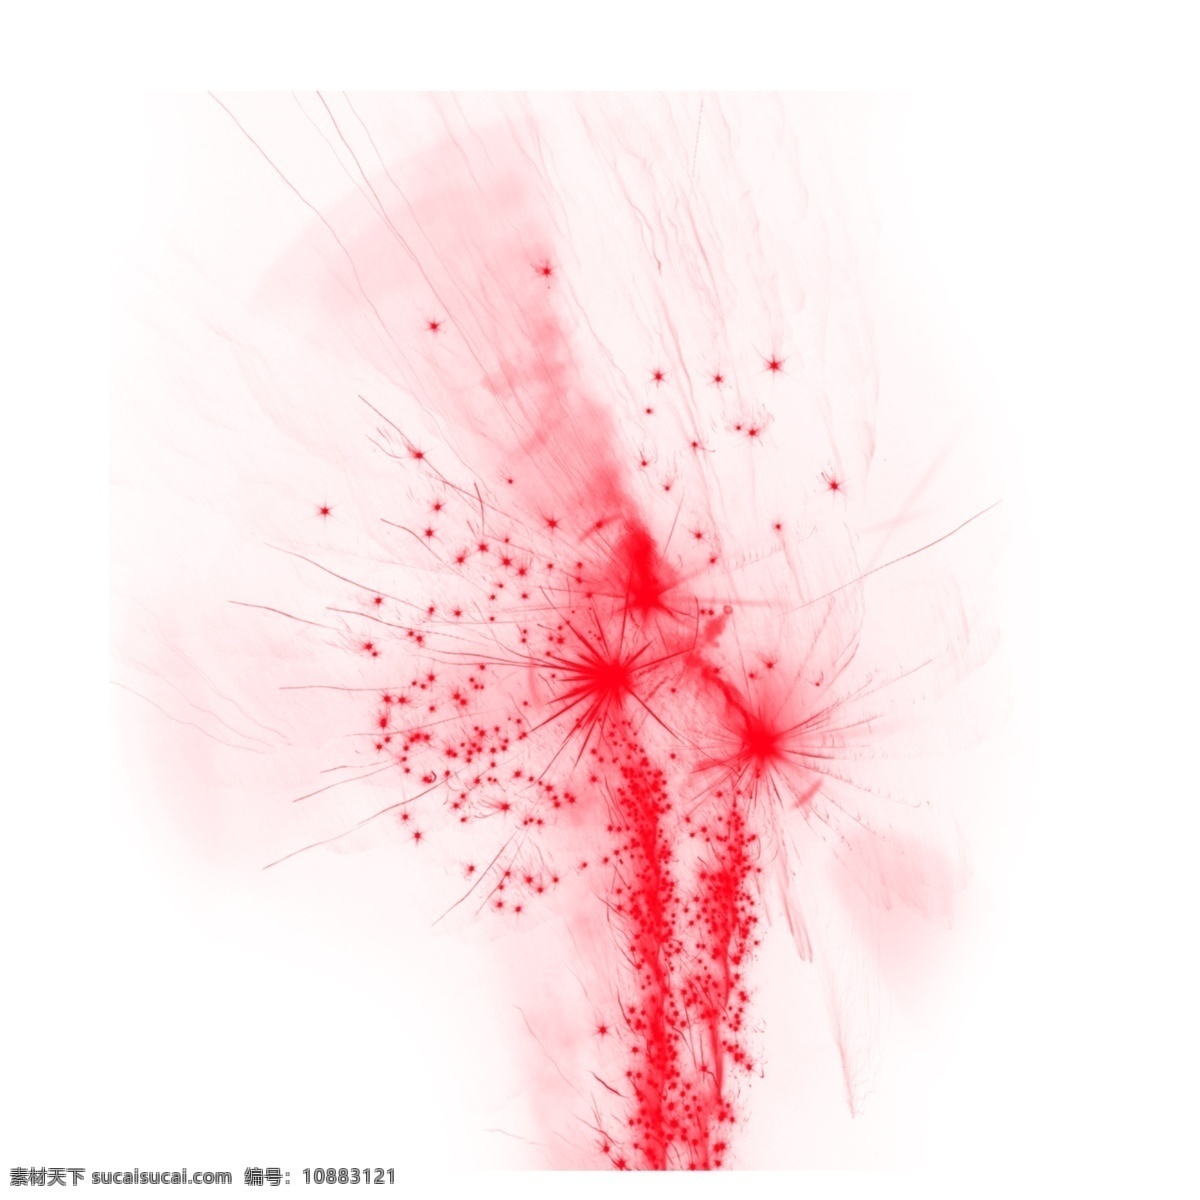 水彩 红色 神经系统 泼墨 圆点 神经 系统 粉色 个性 创意 颗粒 漂浮 烟雾 烟气 抽象 线条